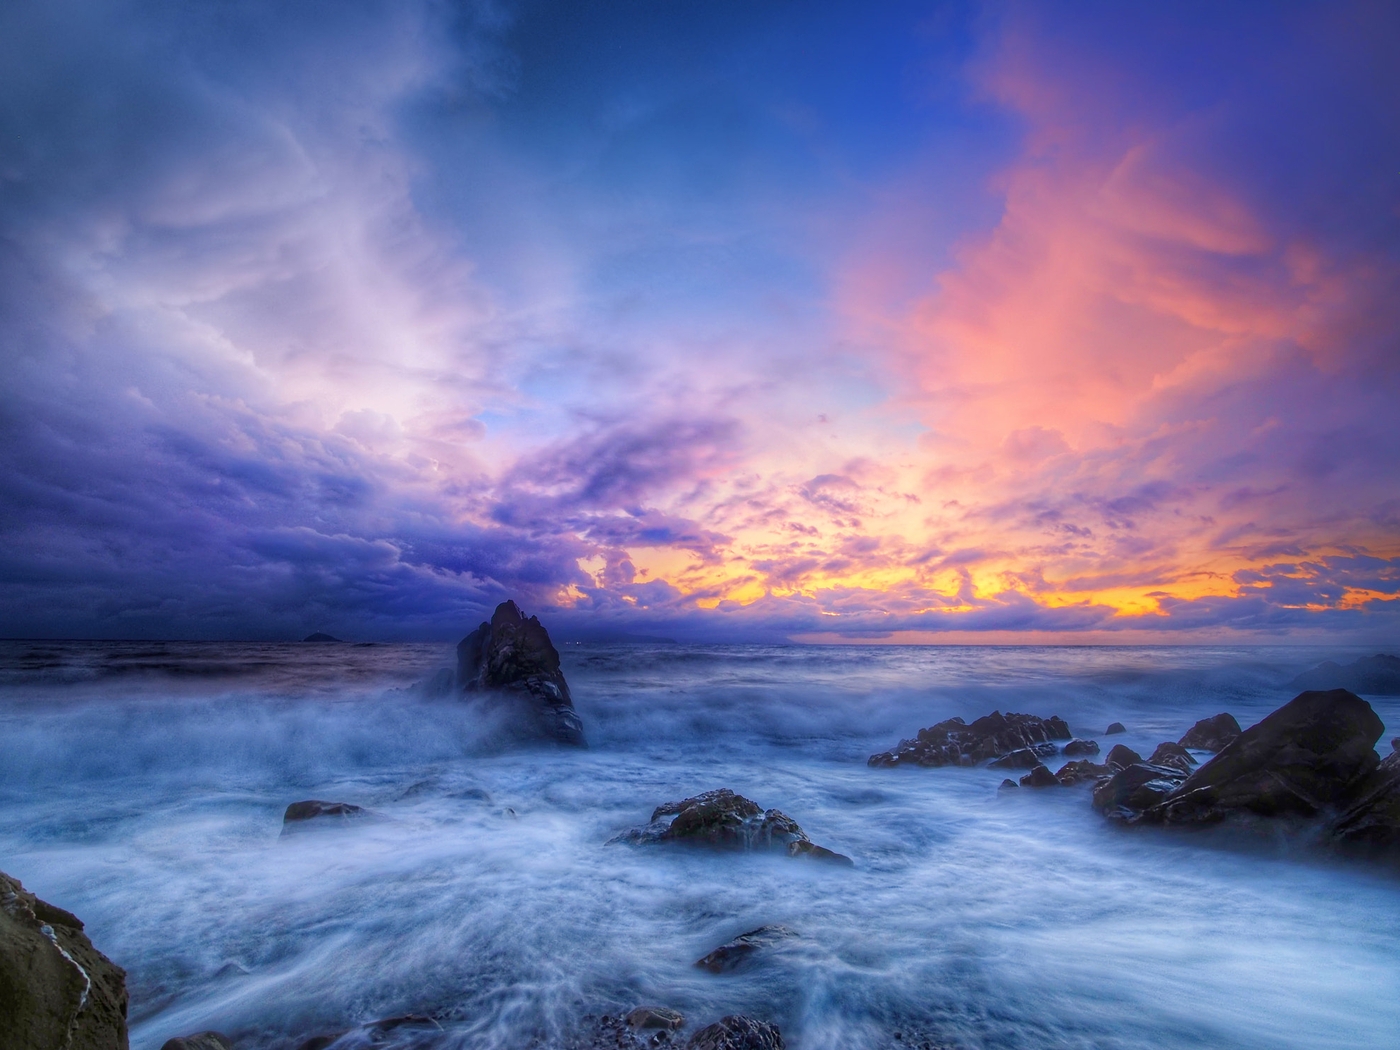 Картинка: море, океан, волны, скалы, небо, облака, закат, рассвет, красивый пейзаж